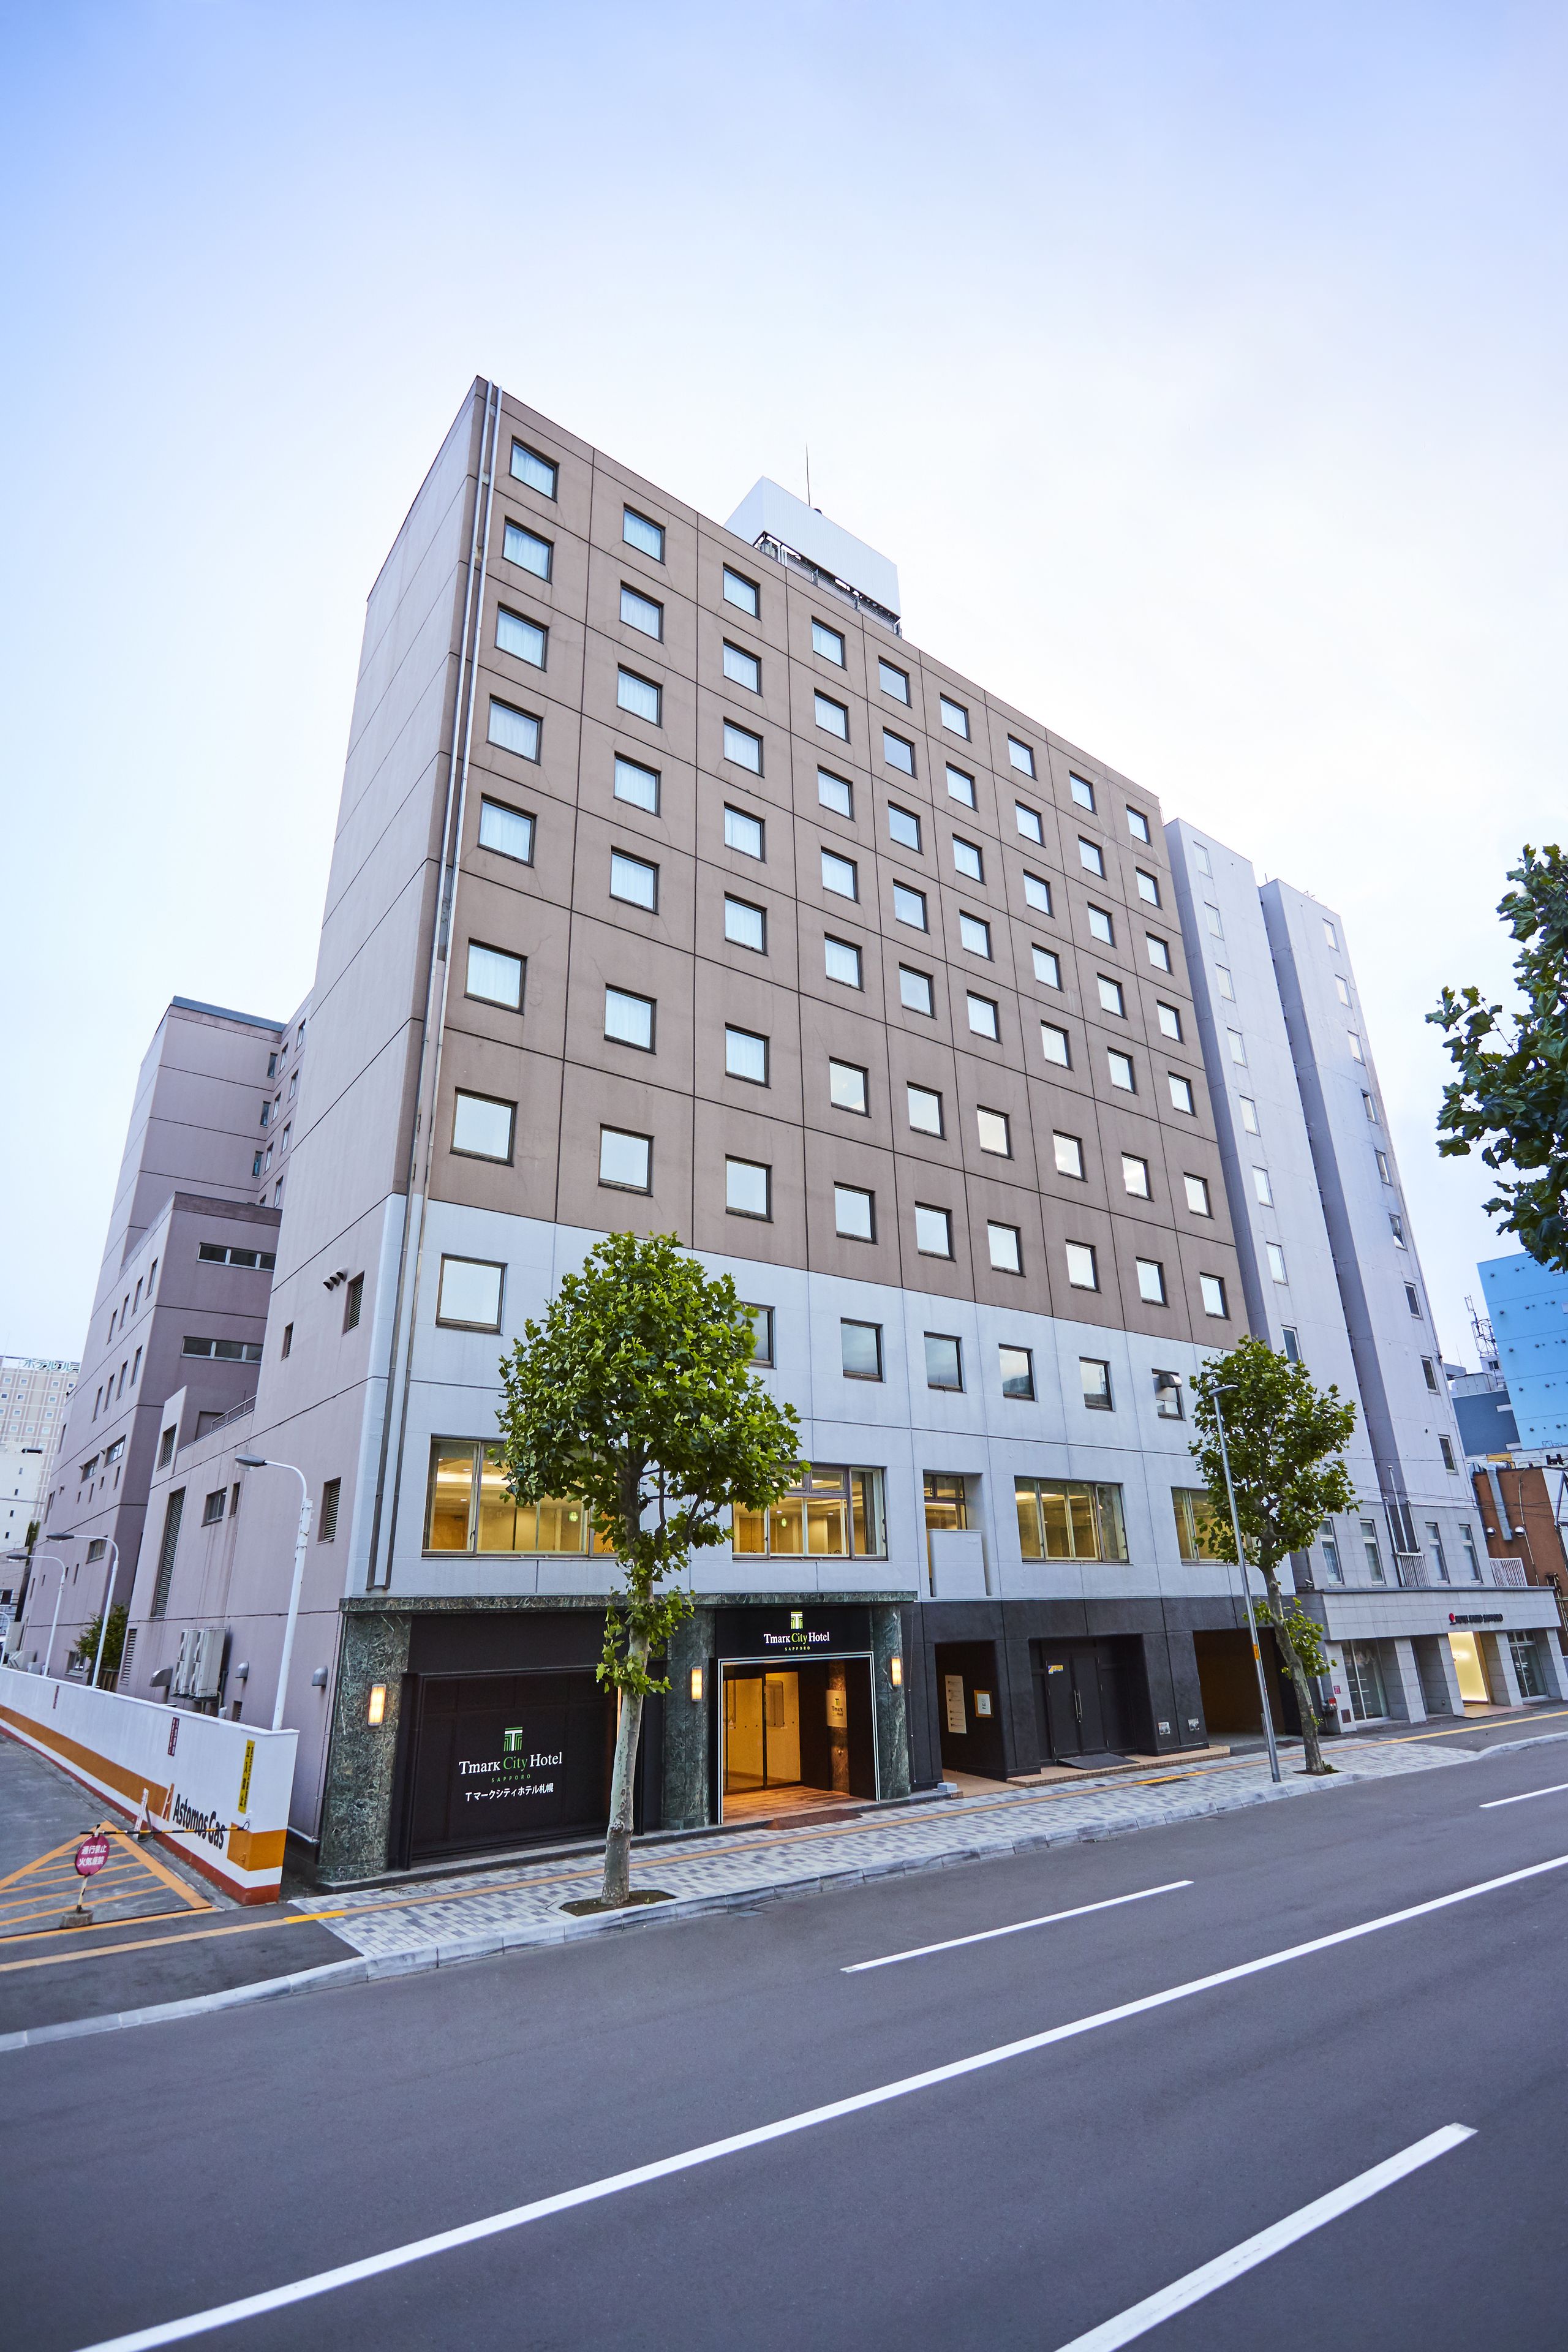 Tマークシティホテル札幌 image 1